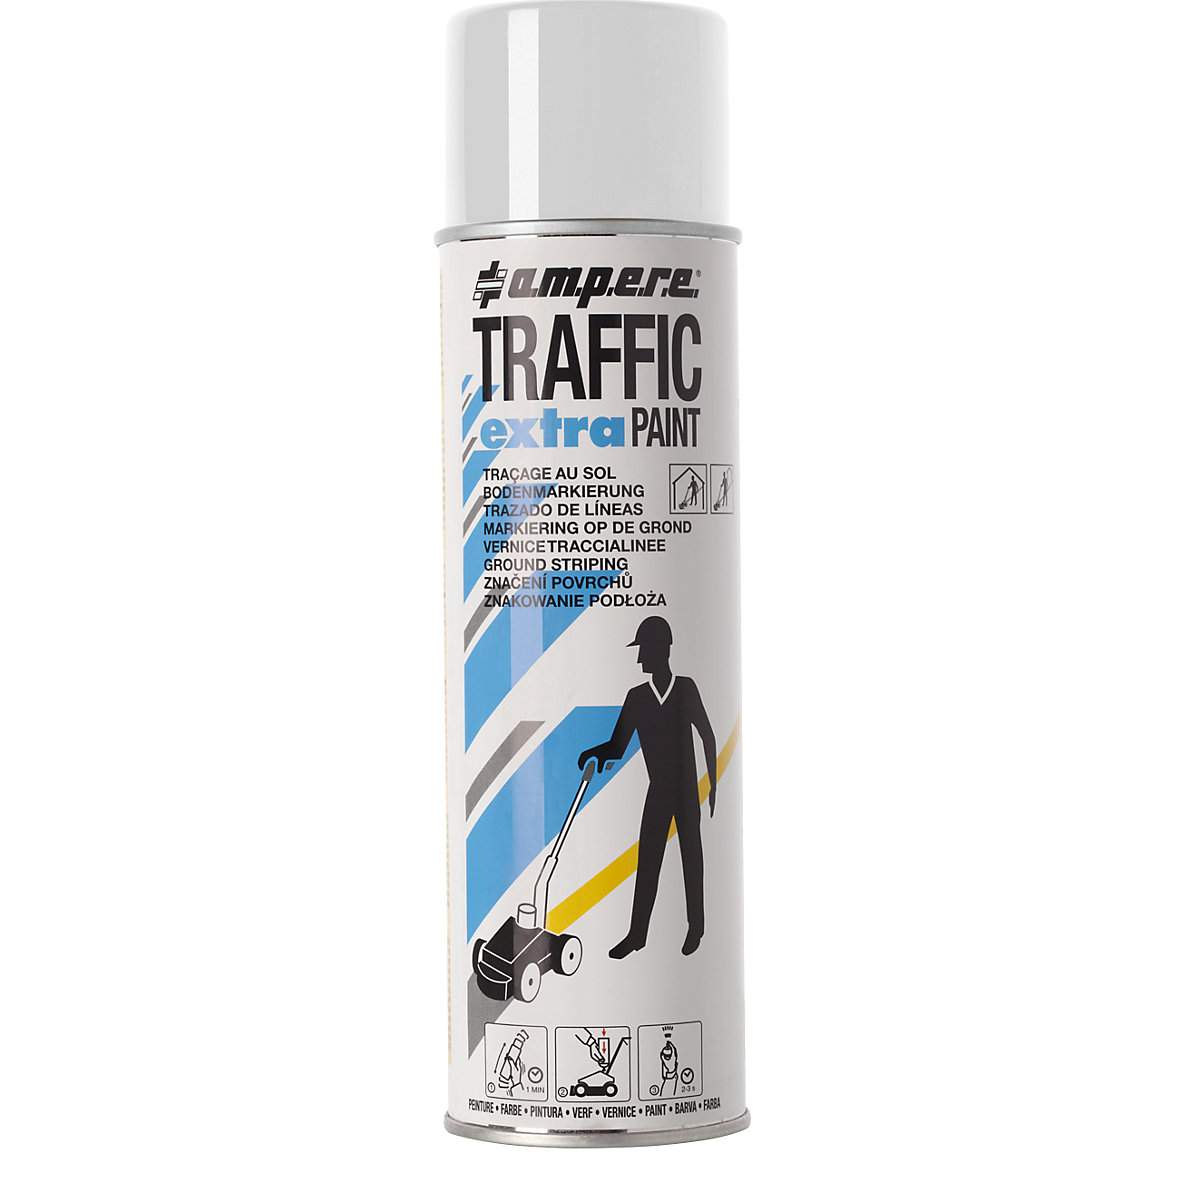 Tinta de marcação Traffic extra Paint® para uso intensivo – Ampere